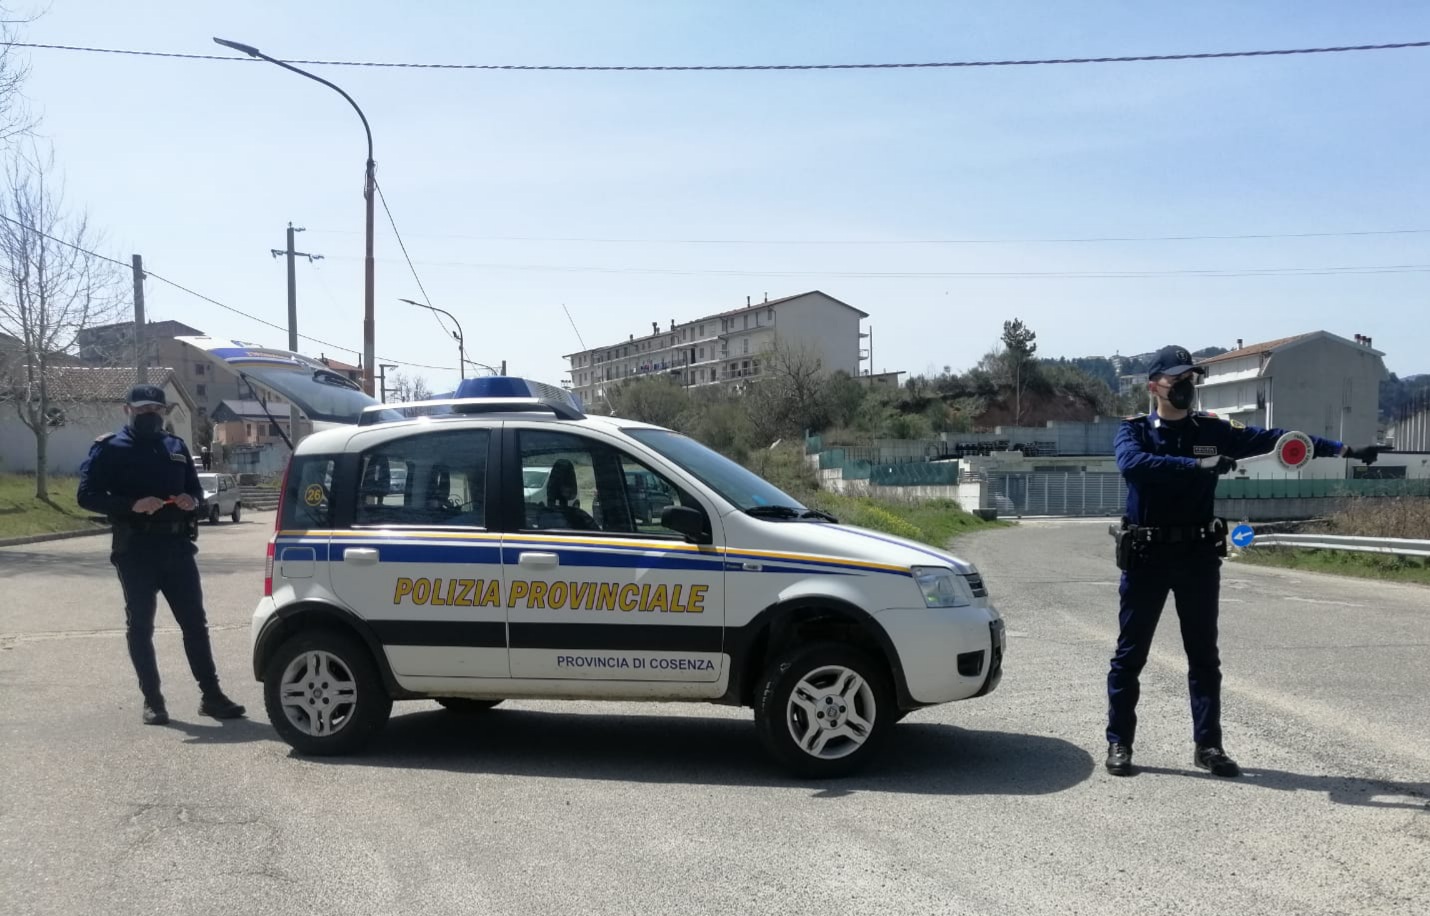 Controlli della Polizia Provinciale sulle strade della Sila: diversi automezzi sequestrati, denunce e sanzioni.